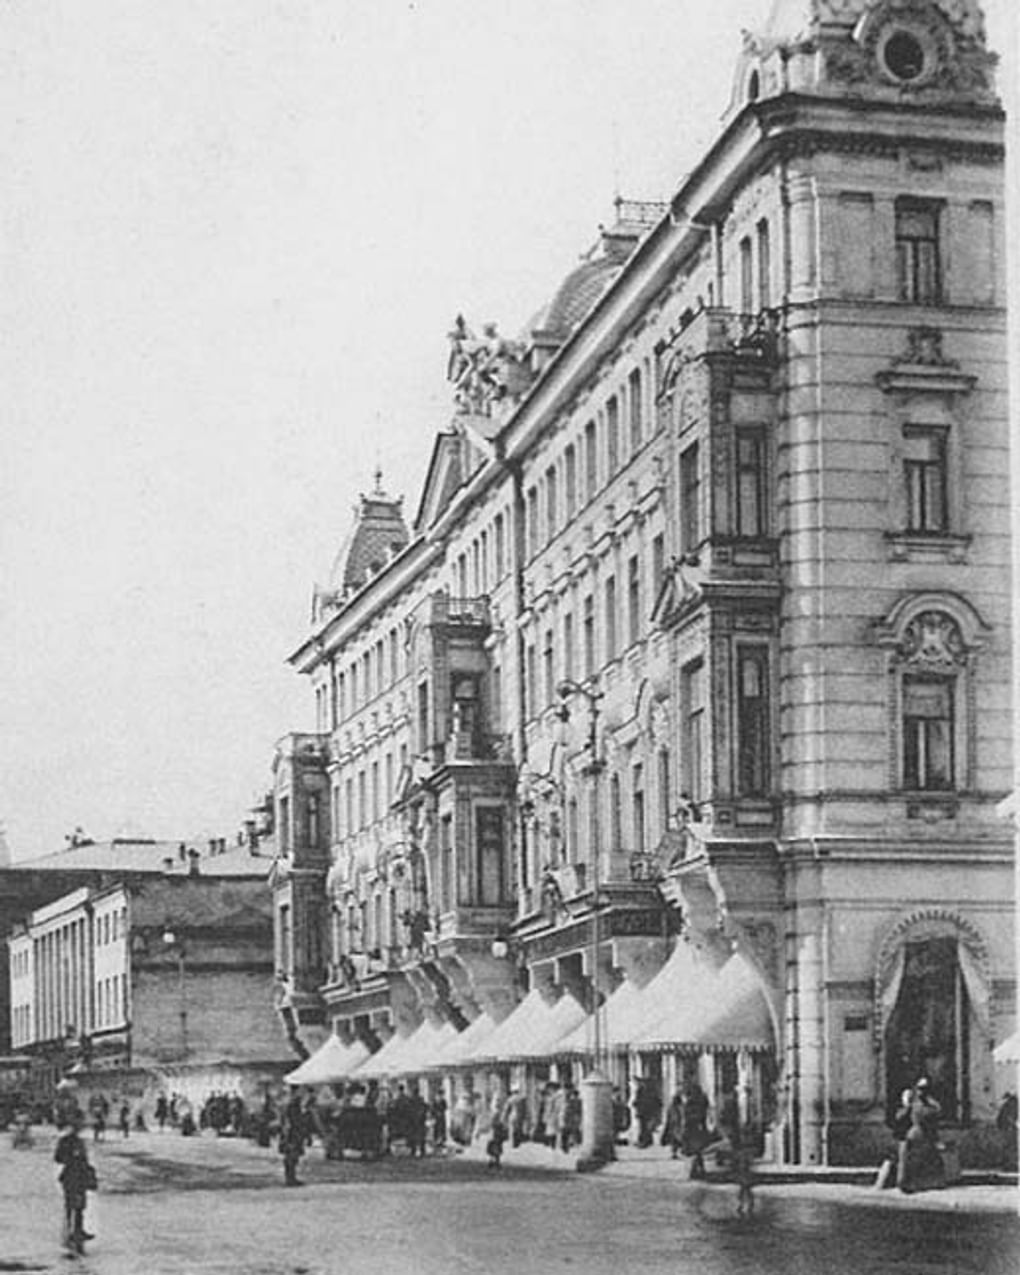 Булочная Филиппова, Москва. 1900-е годы. Фотография: Государственный исторический музей, Москва